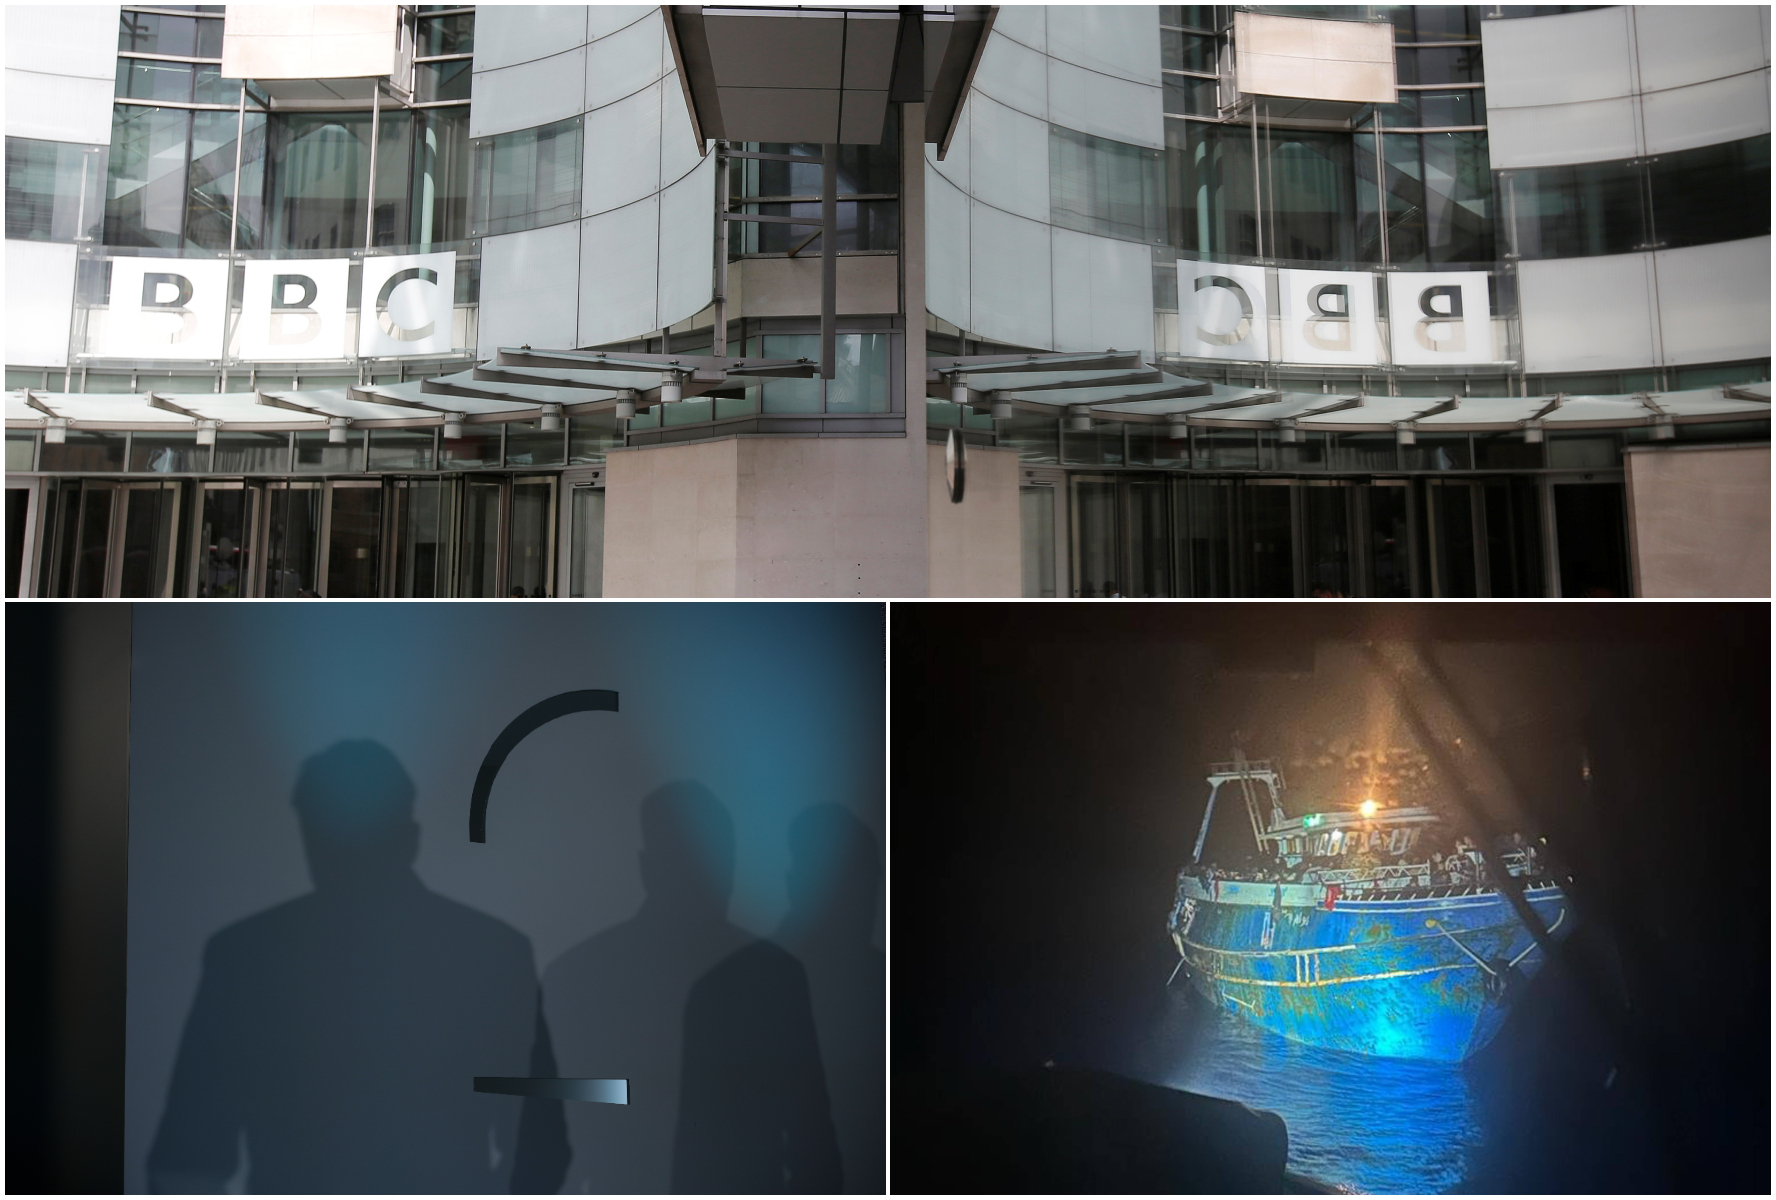 Το BBC στέλνει τον Μητσοτάκη στο υπουργείο Μεταναστευτικής Πολιτικής